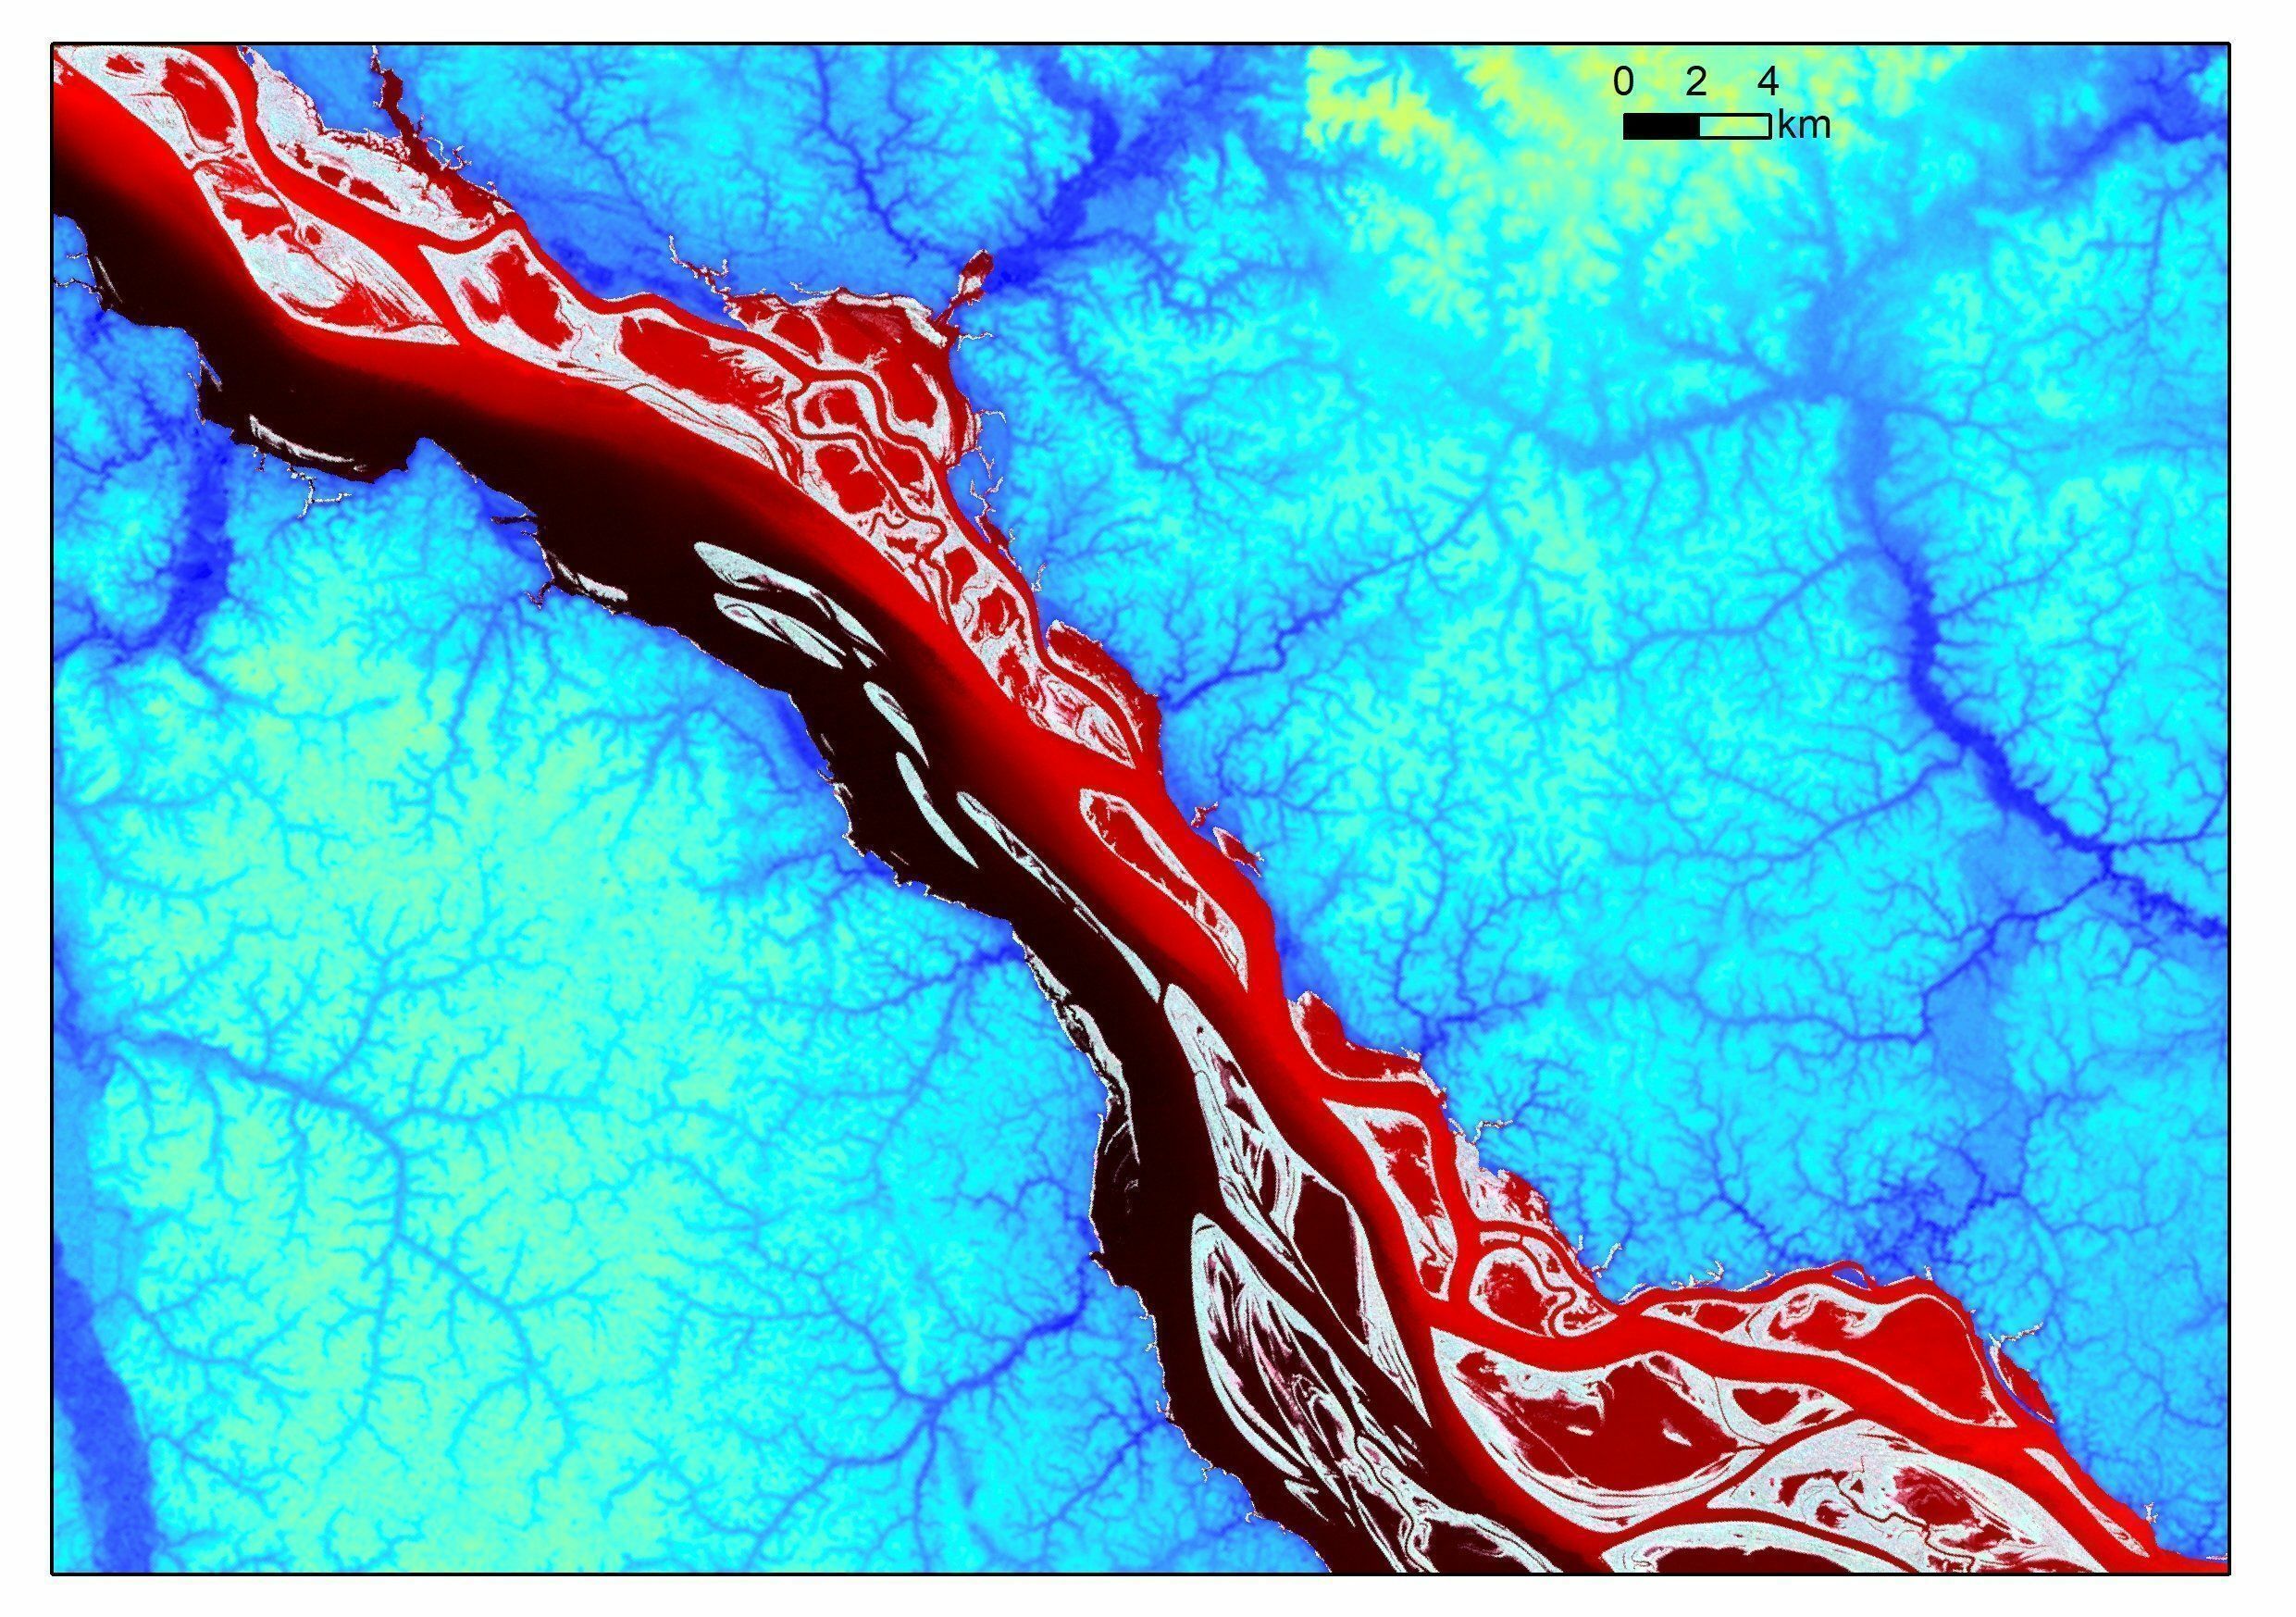 O Hidrossistema de Anavilhanas (Foto de satélite - Novo Airão, 30 de julho de 2017). Clique na imagem para ver localização no mapa do Amazonas